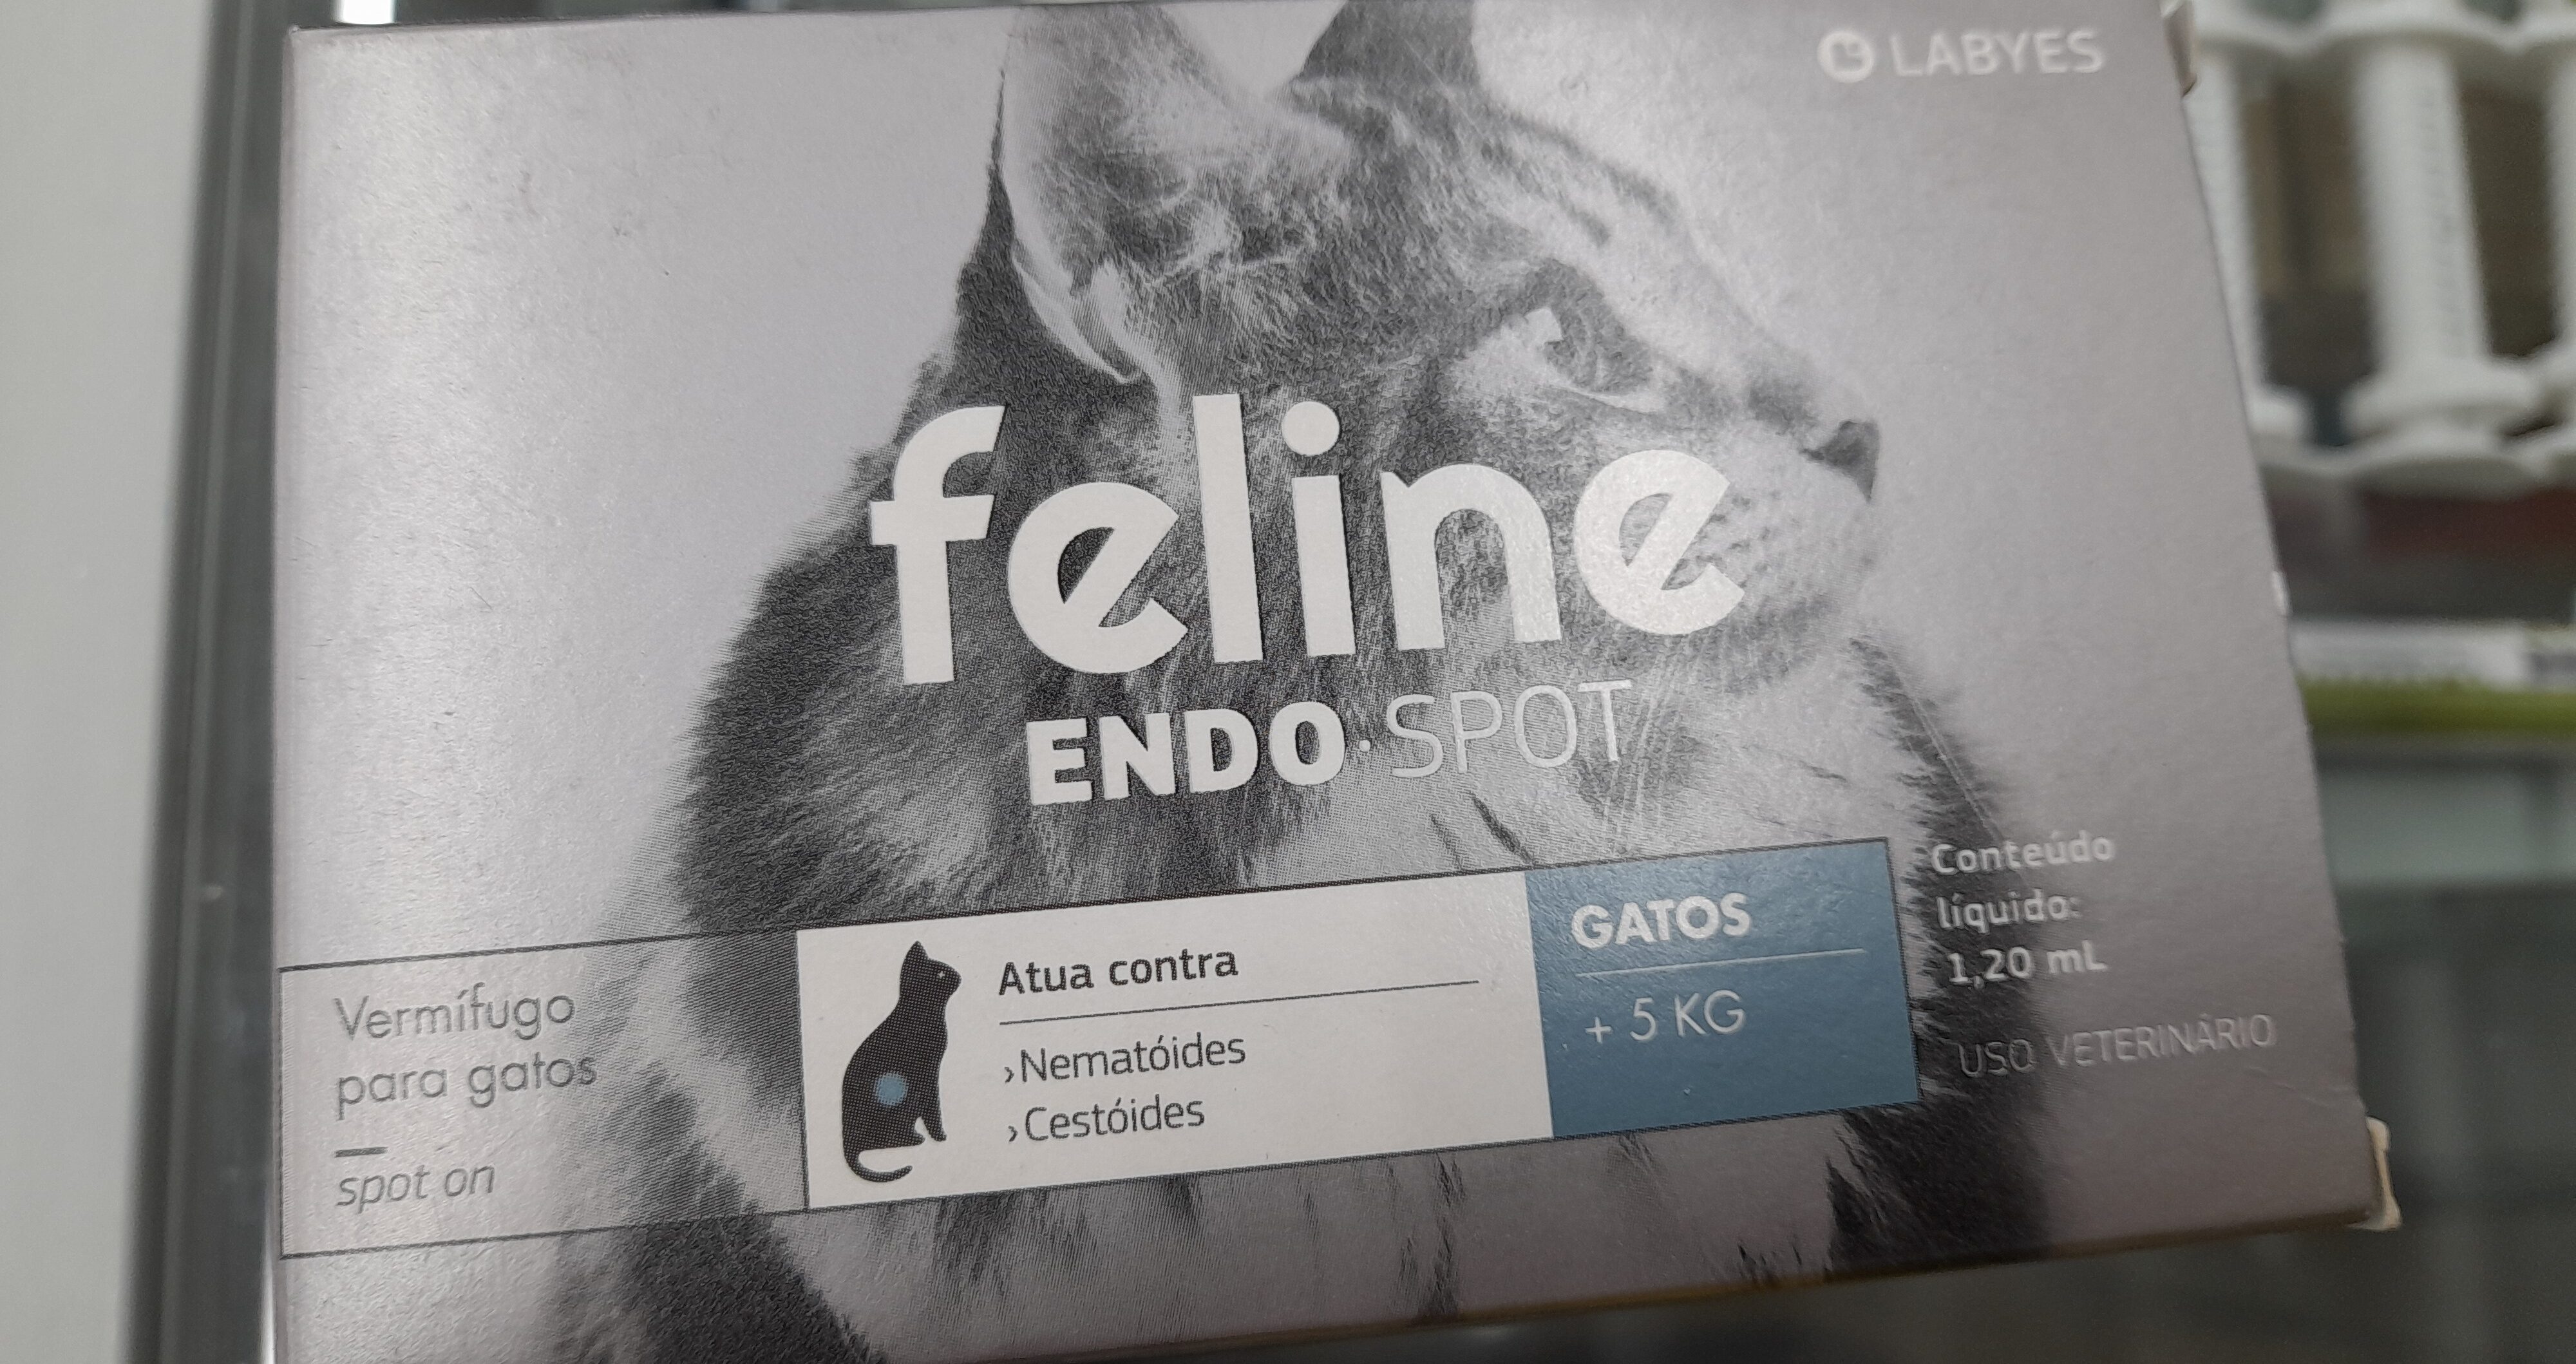 Med. Feline endo spot gt 2kg a 5kg - Product - pt